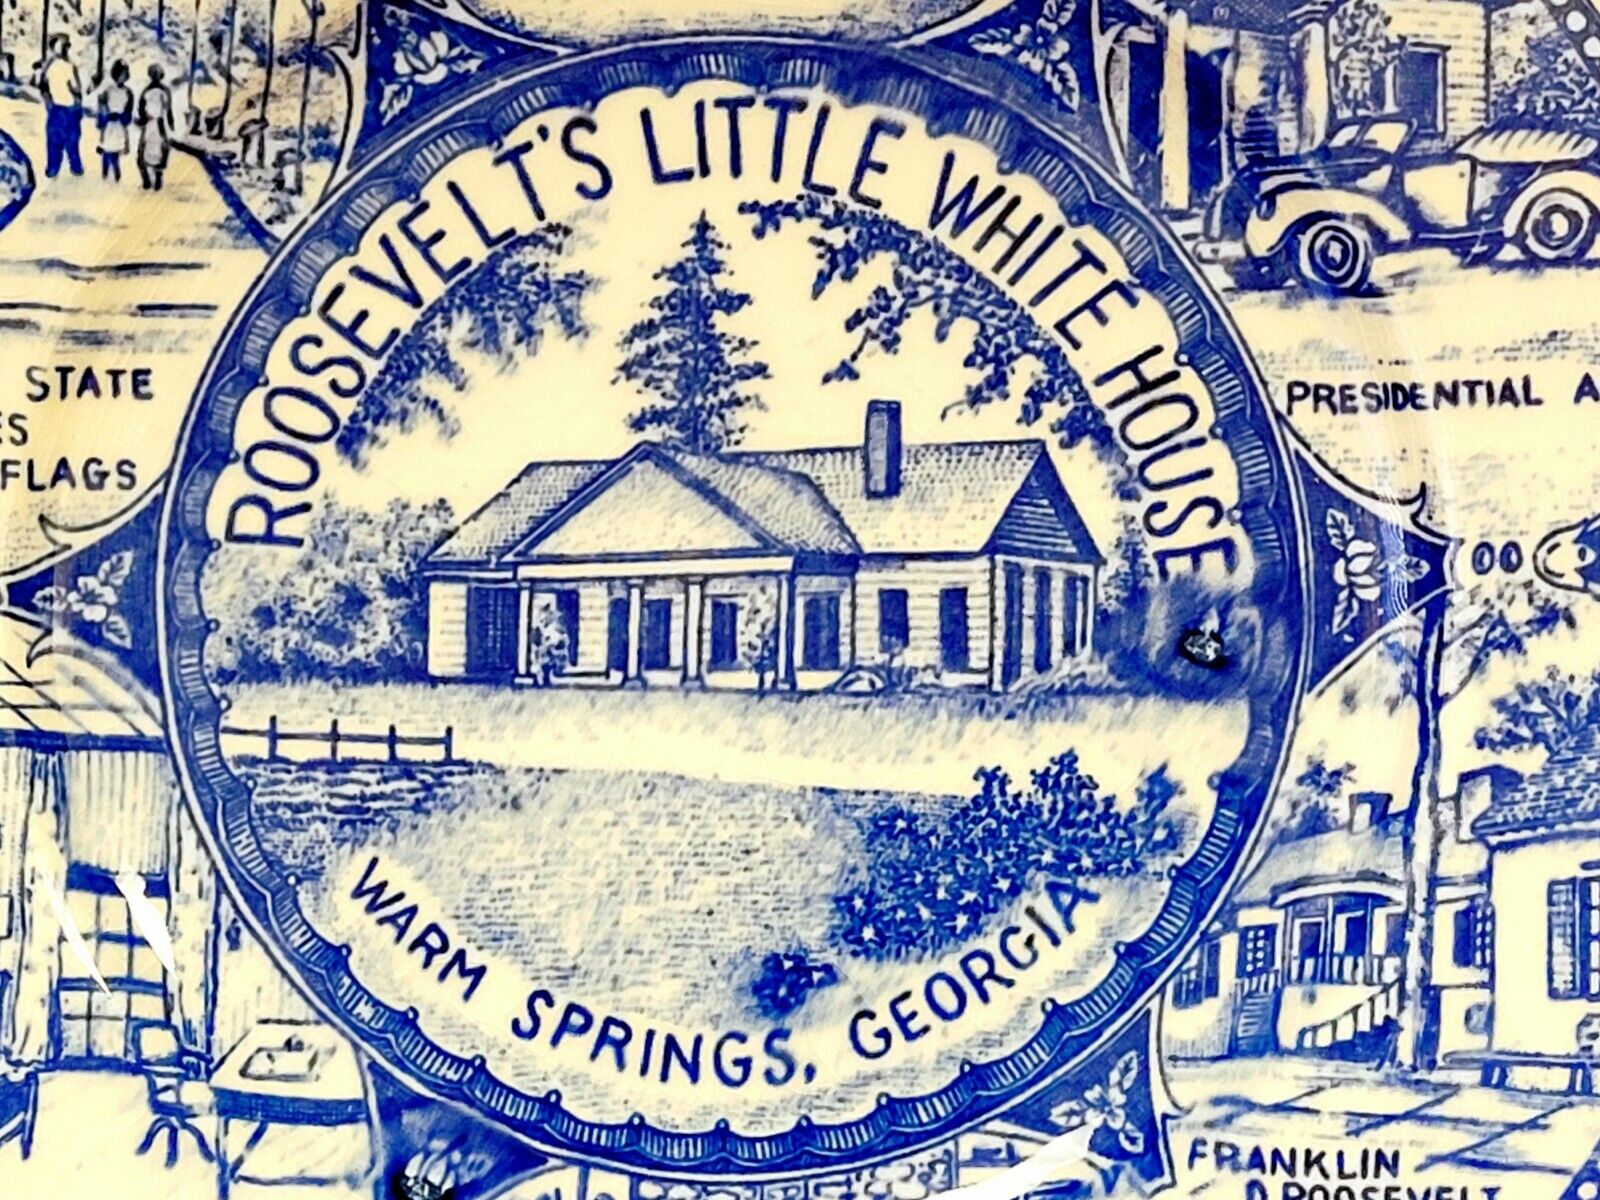 Roosevelt\'s Little White House Vtg Travel Souvenir Plate 7\